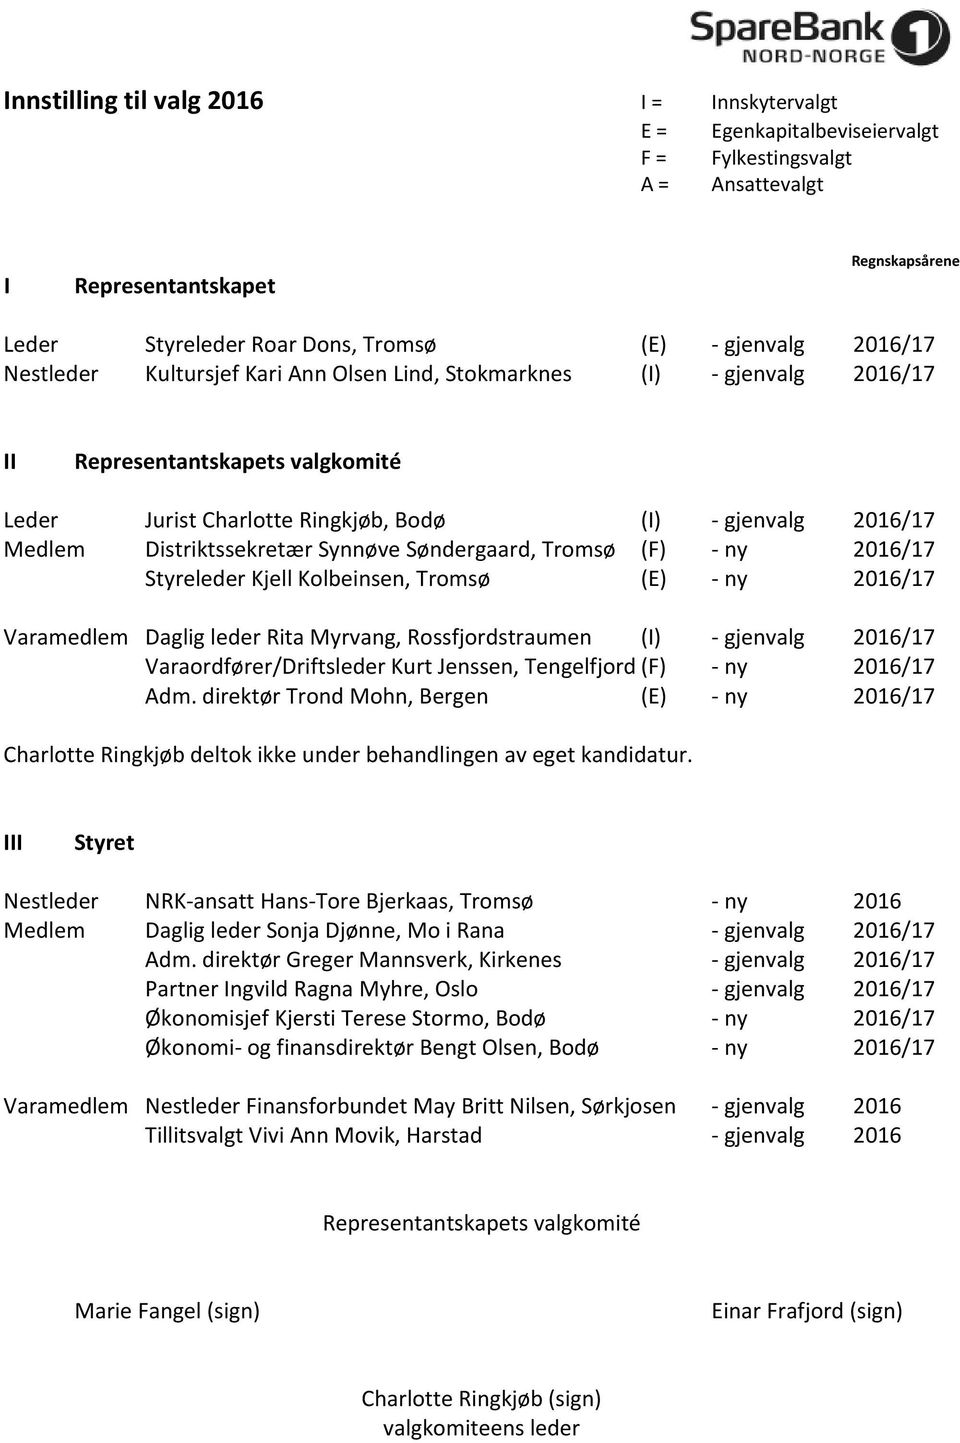 Distriktssekretær Synnøve Søndergaard, Tromsø (F) ny 2016/17 Styreleder Kjell Kolbeinsen, Tromsø (E) ny 2016/17 Varamedlem Daglig leder Rita Myrvang, Rossfjordstraumen (I) gjenvalg 2016/17